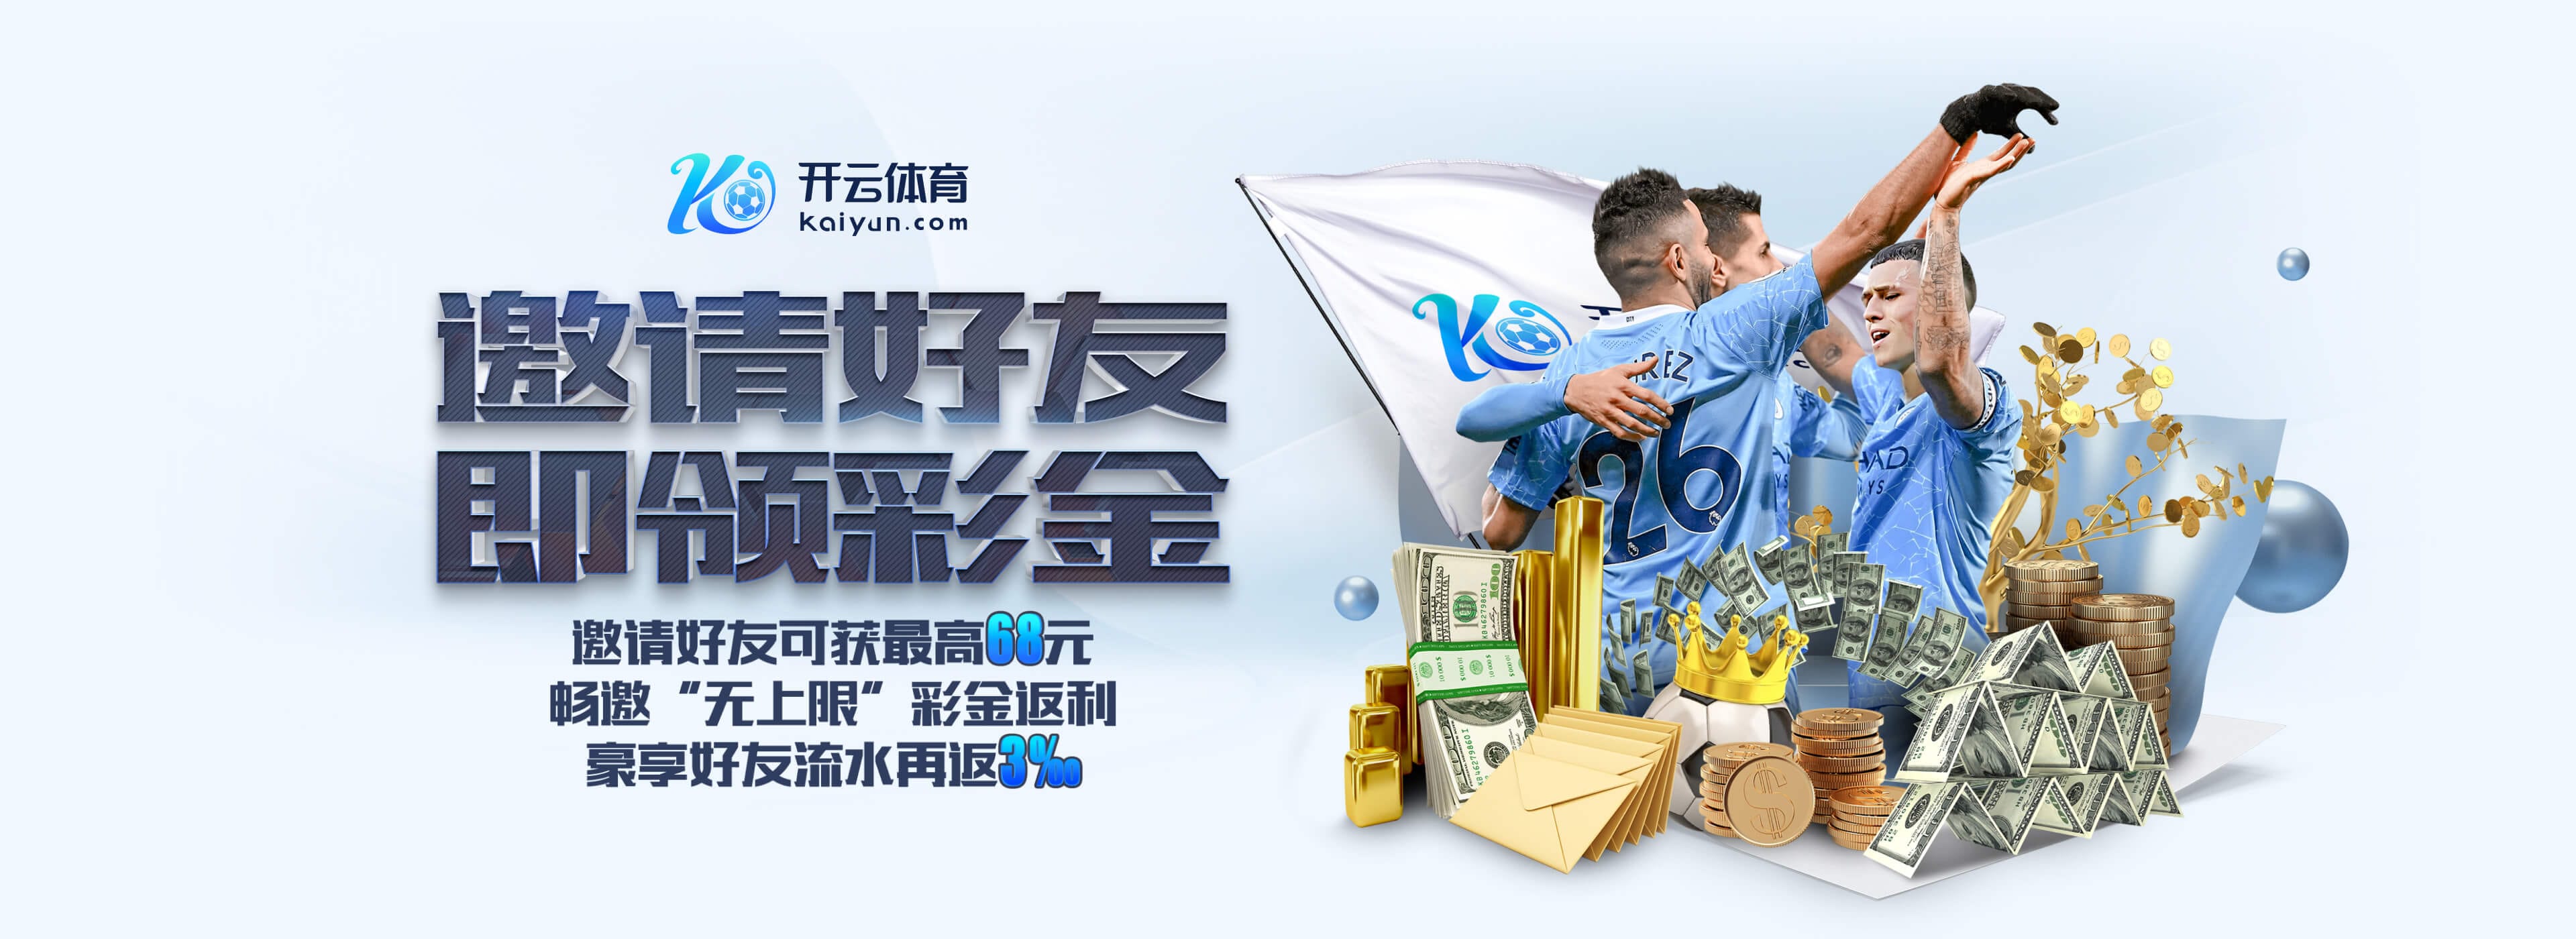 leyu·乐鱼(中国)体育官方网站